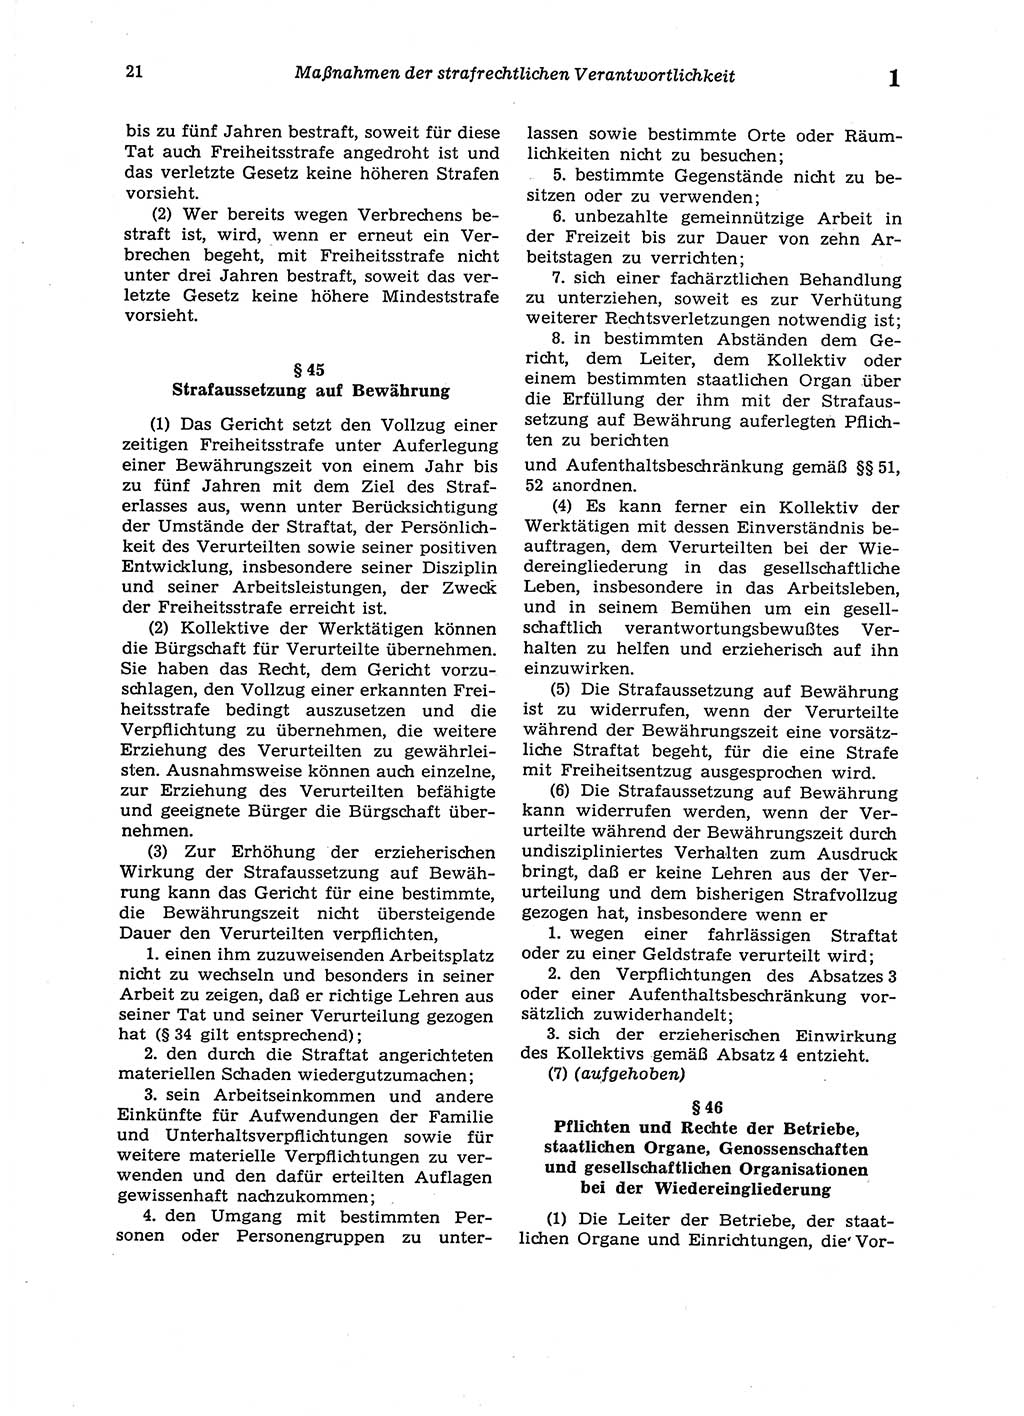 Strafgesetzbuch (StGB) der Deutschen Demokratischen Republik (DDR) 1987, Seite 21 (StGB DDR 1987, S. 21)